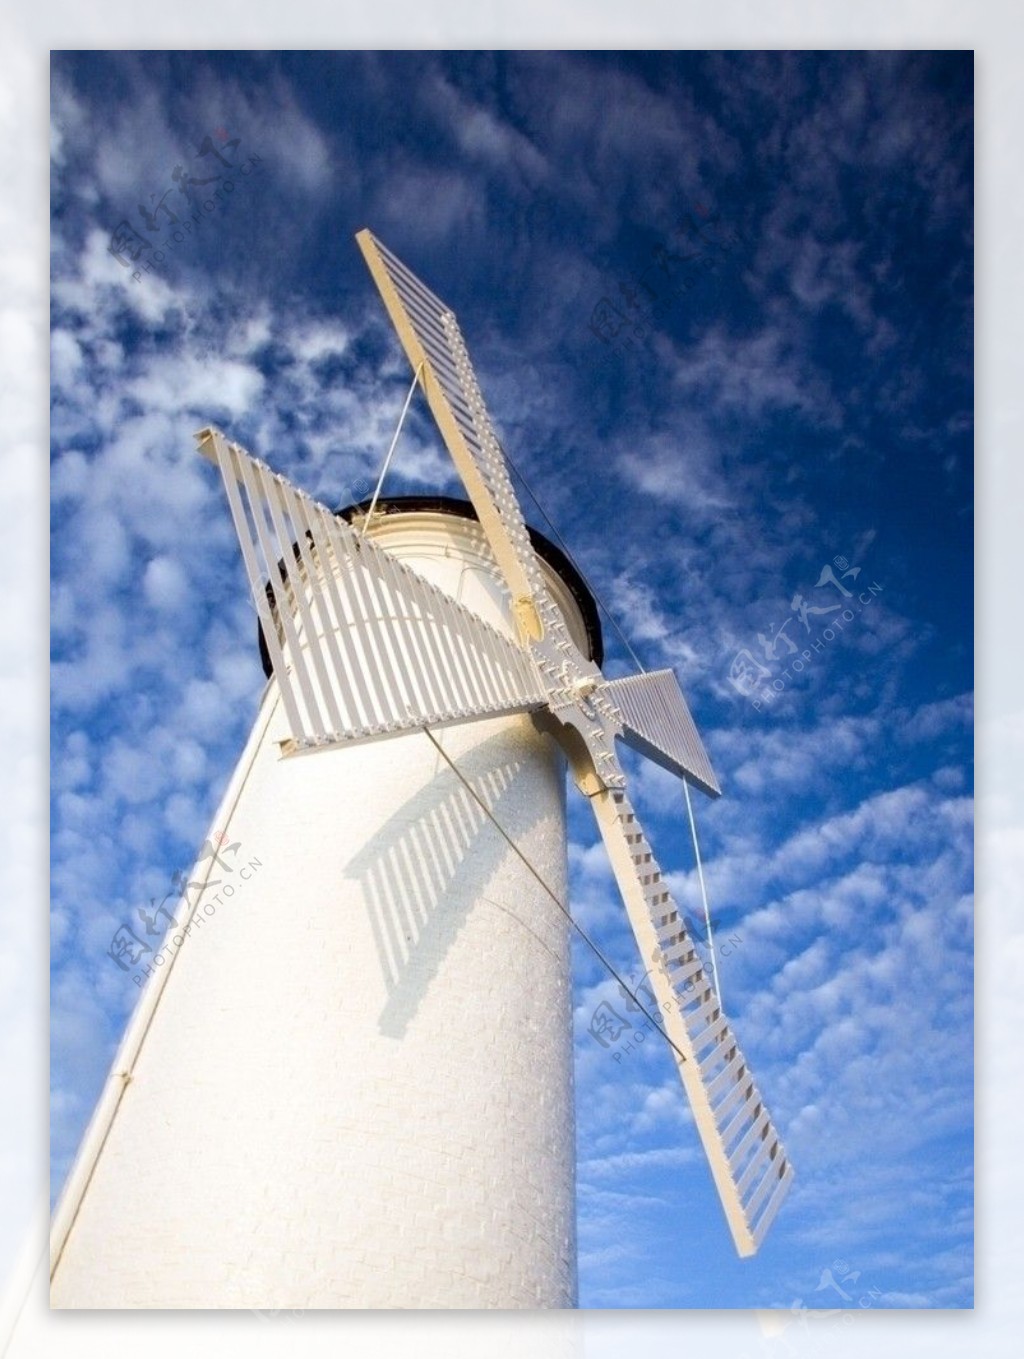 风车荷兰图片